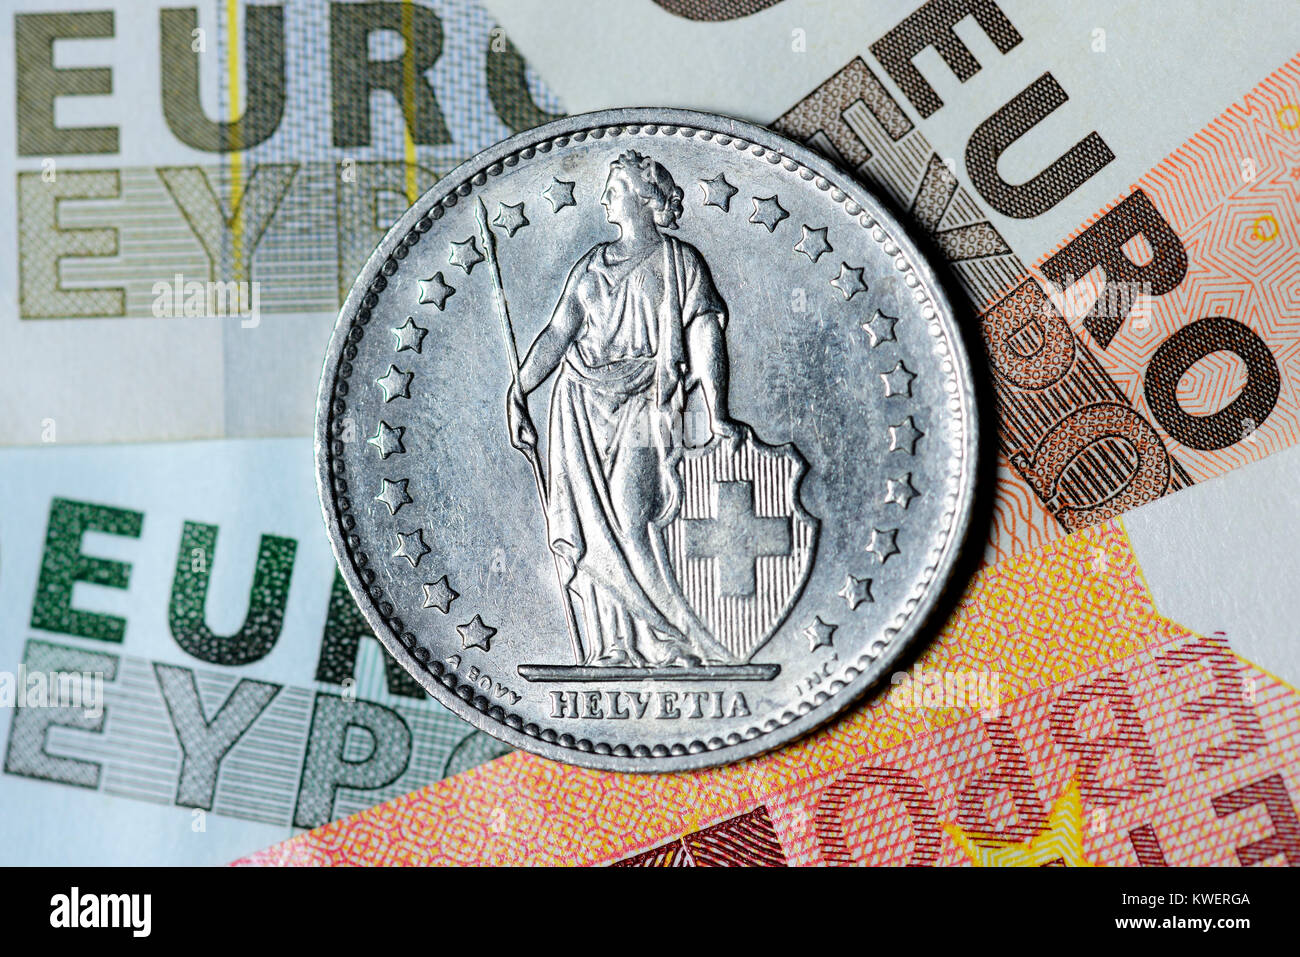 Franc suisse sur euronotes, fin de la franc-moins, bien entendu, de l'euro, Schweizer Franken auf, Euroscheinen Franken-Mindestkurses Beendigung des zum E Banque D'Images